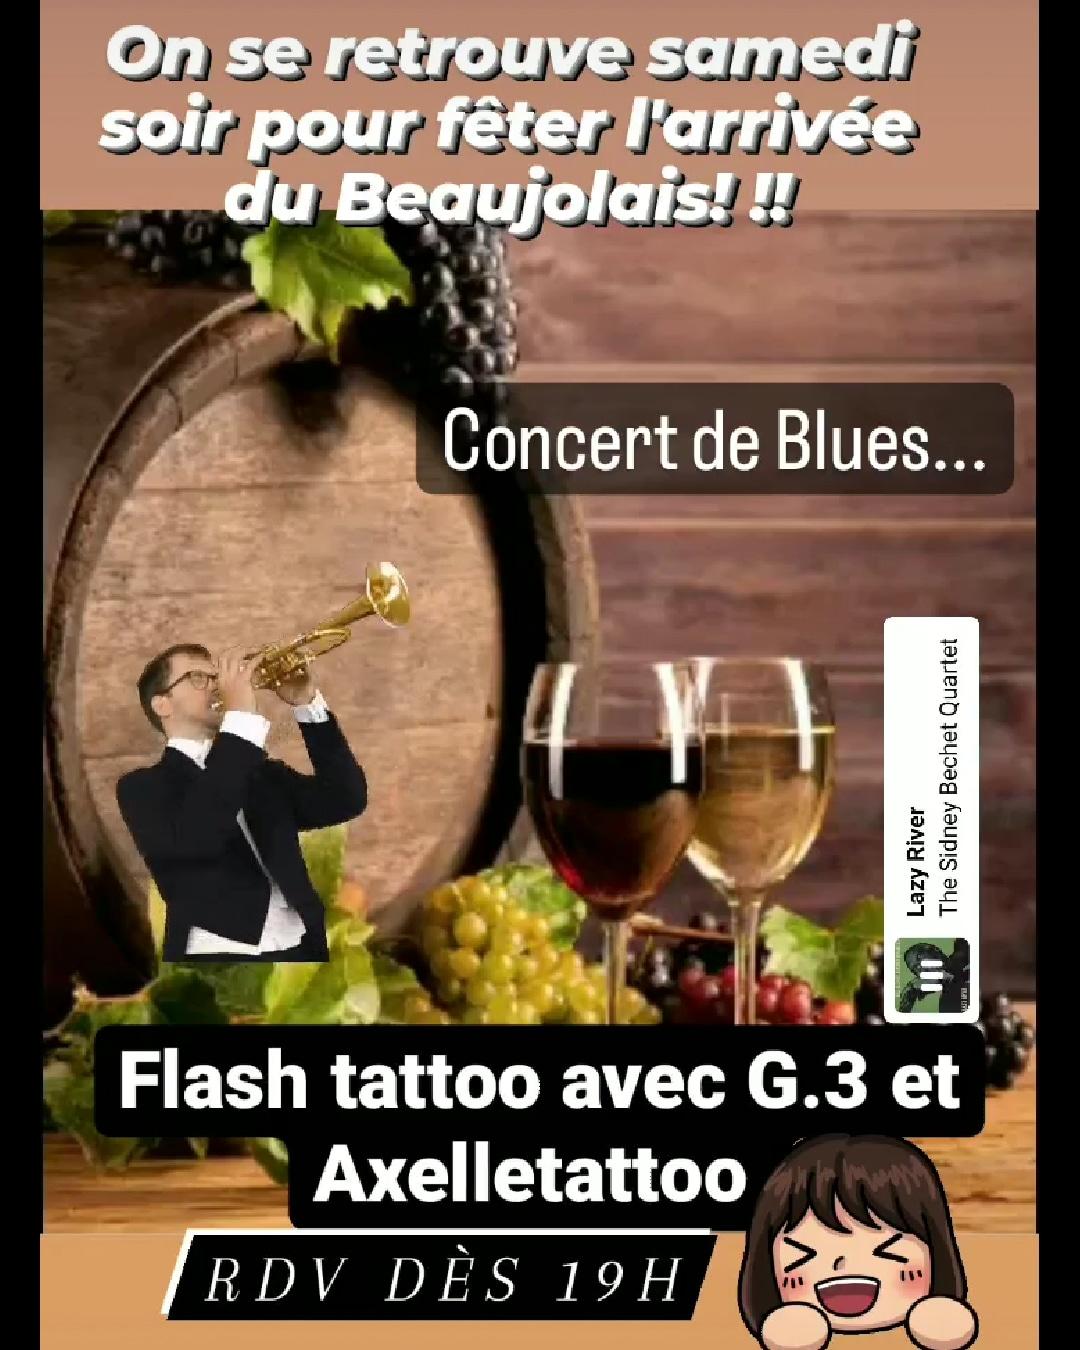 Soirée Beaujolais et concert de blues